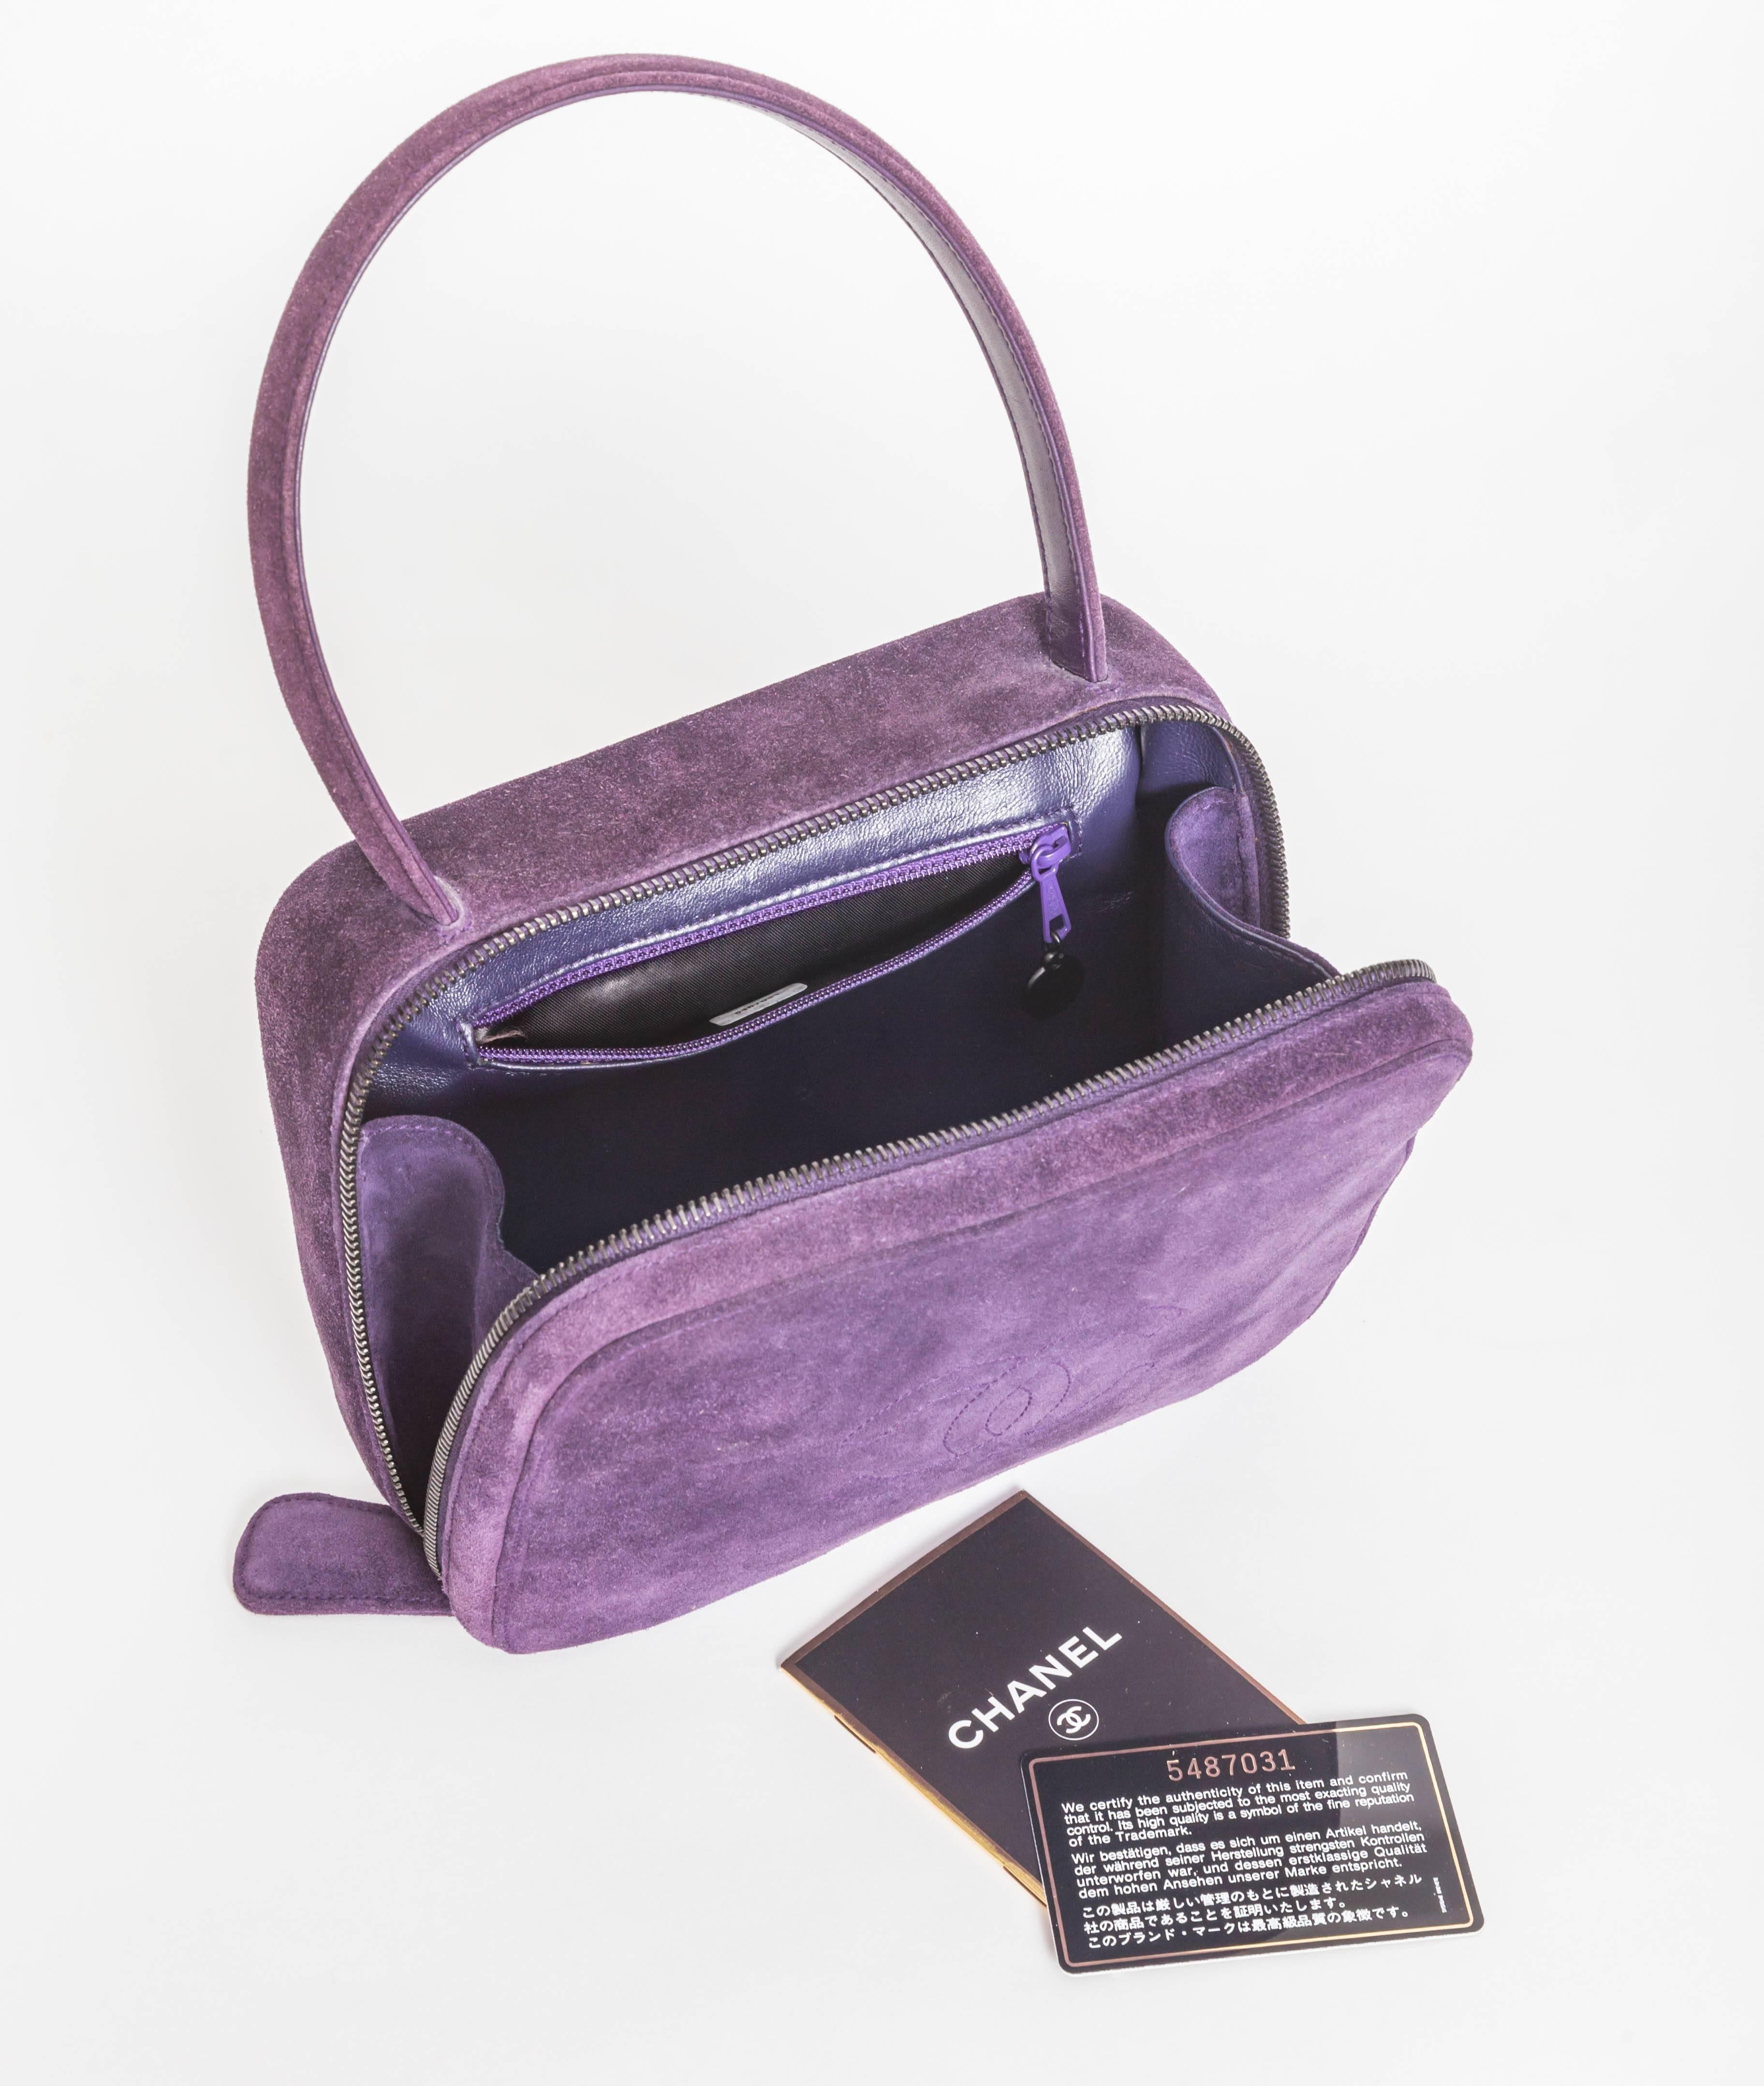 Vintage Purple Suede Chanel Bag - 1997 - 1999 5